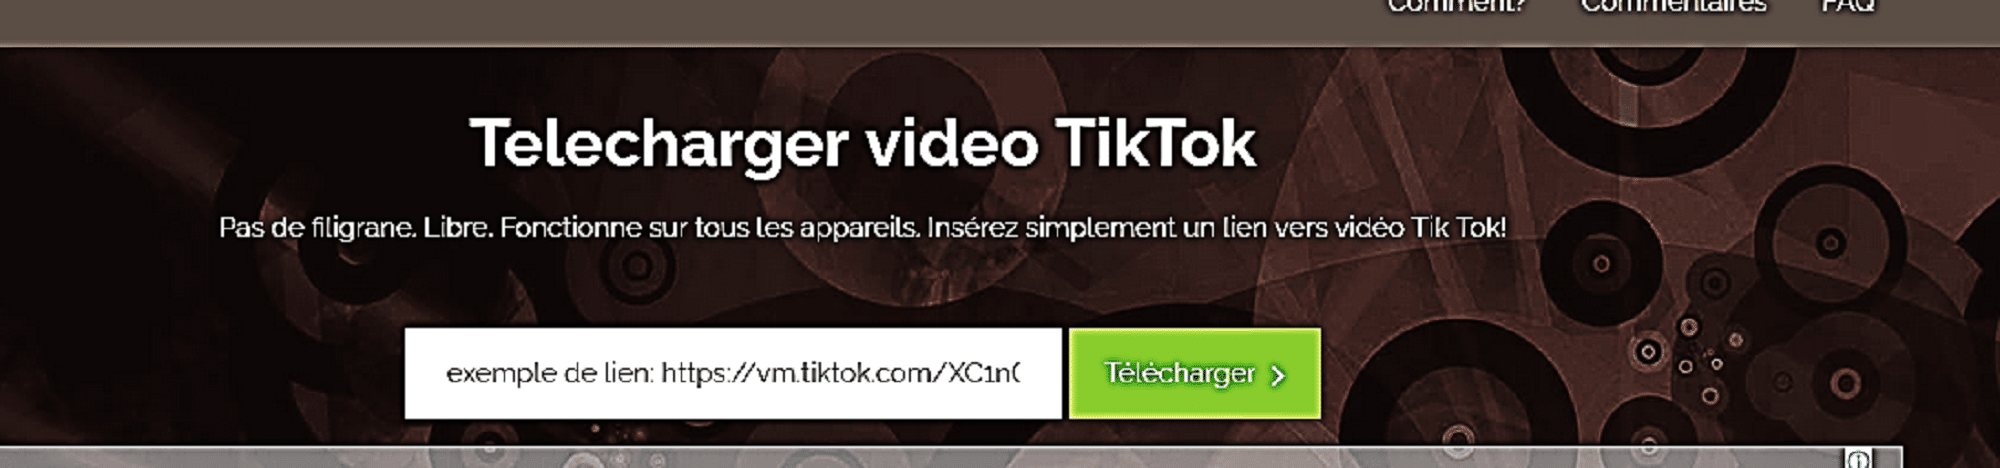 Download-tick-videos-tick-talk